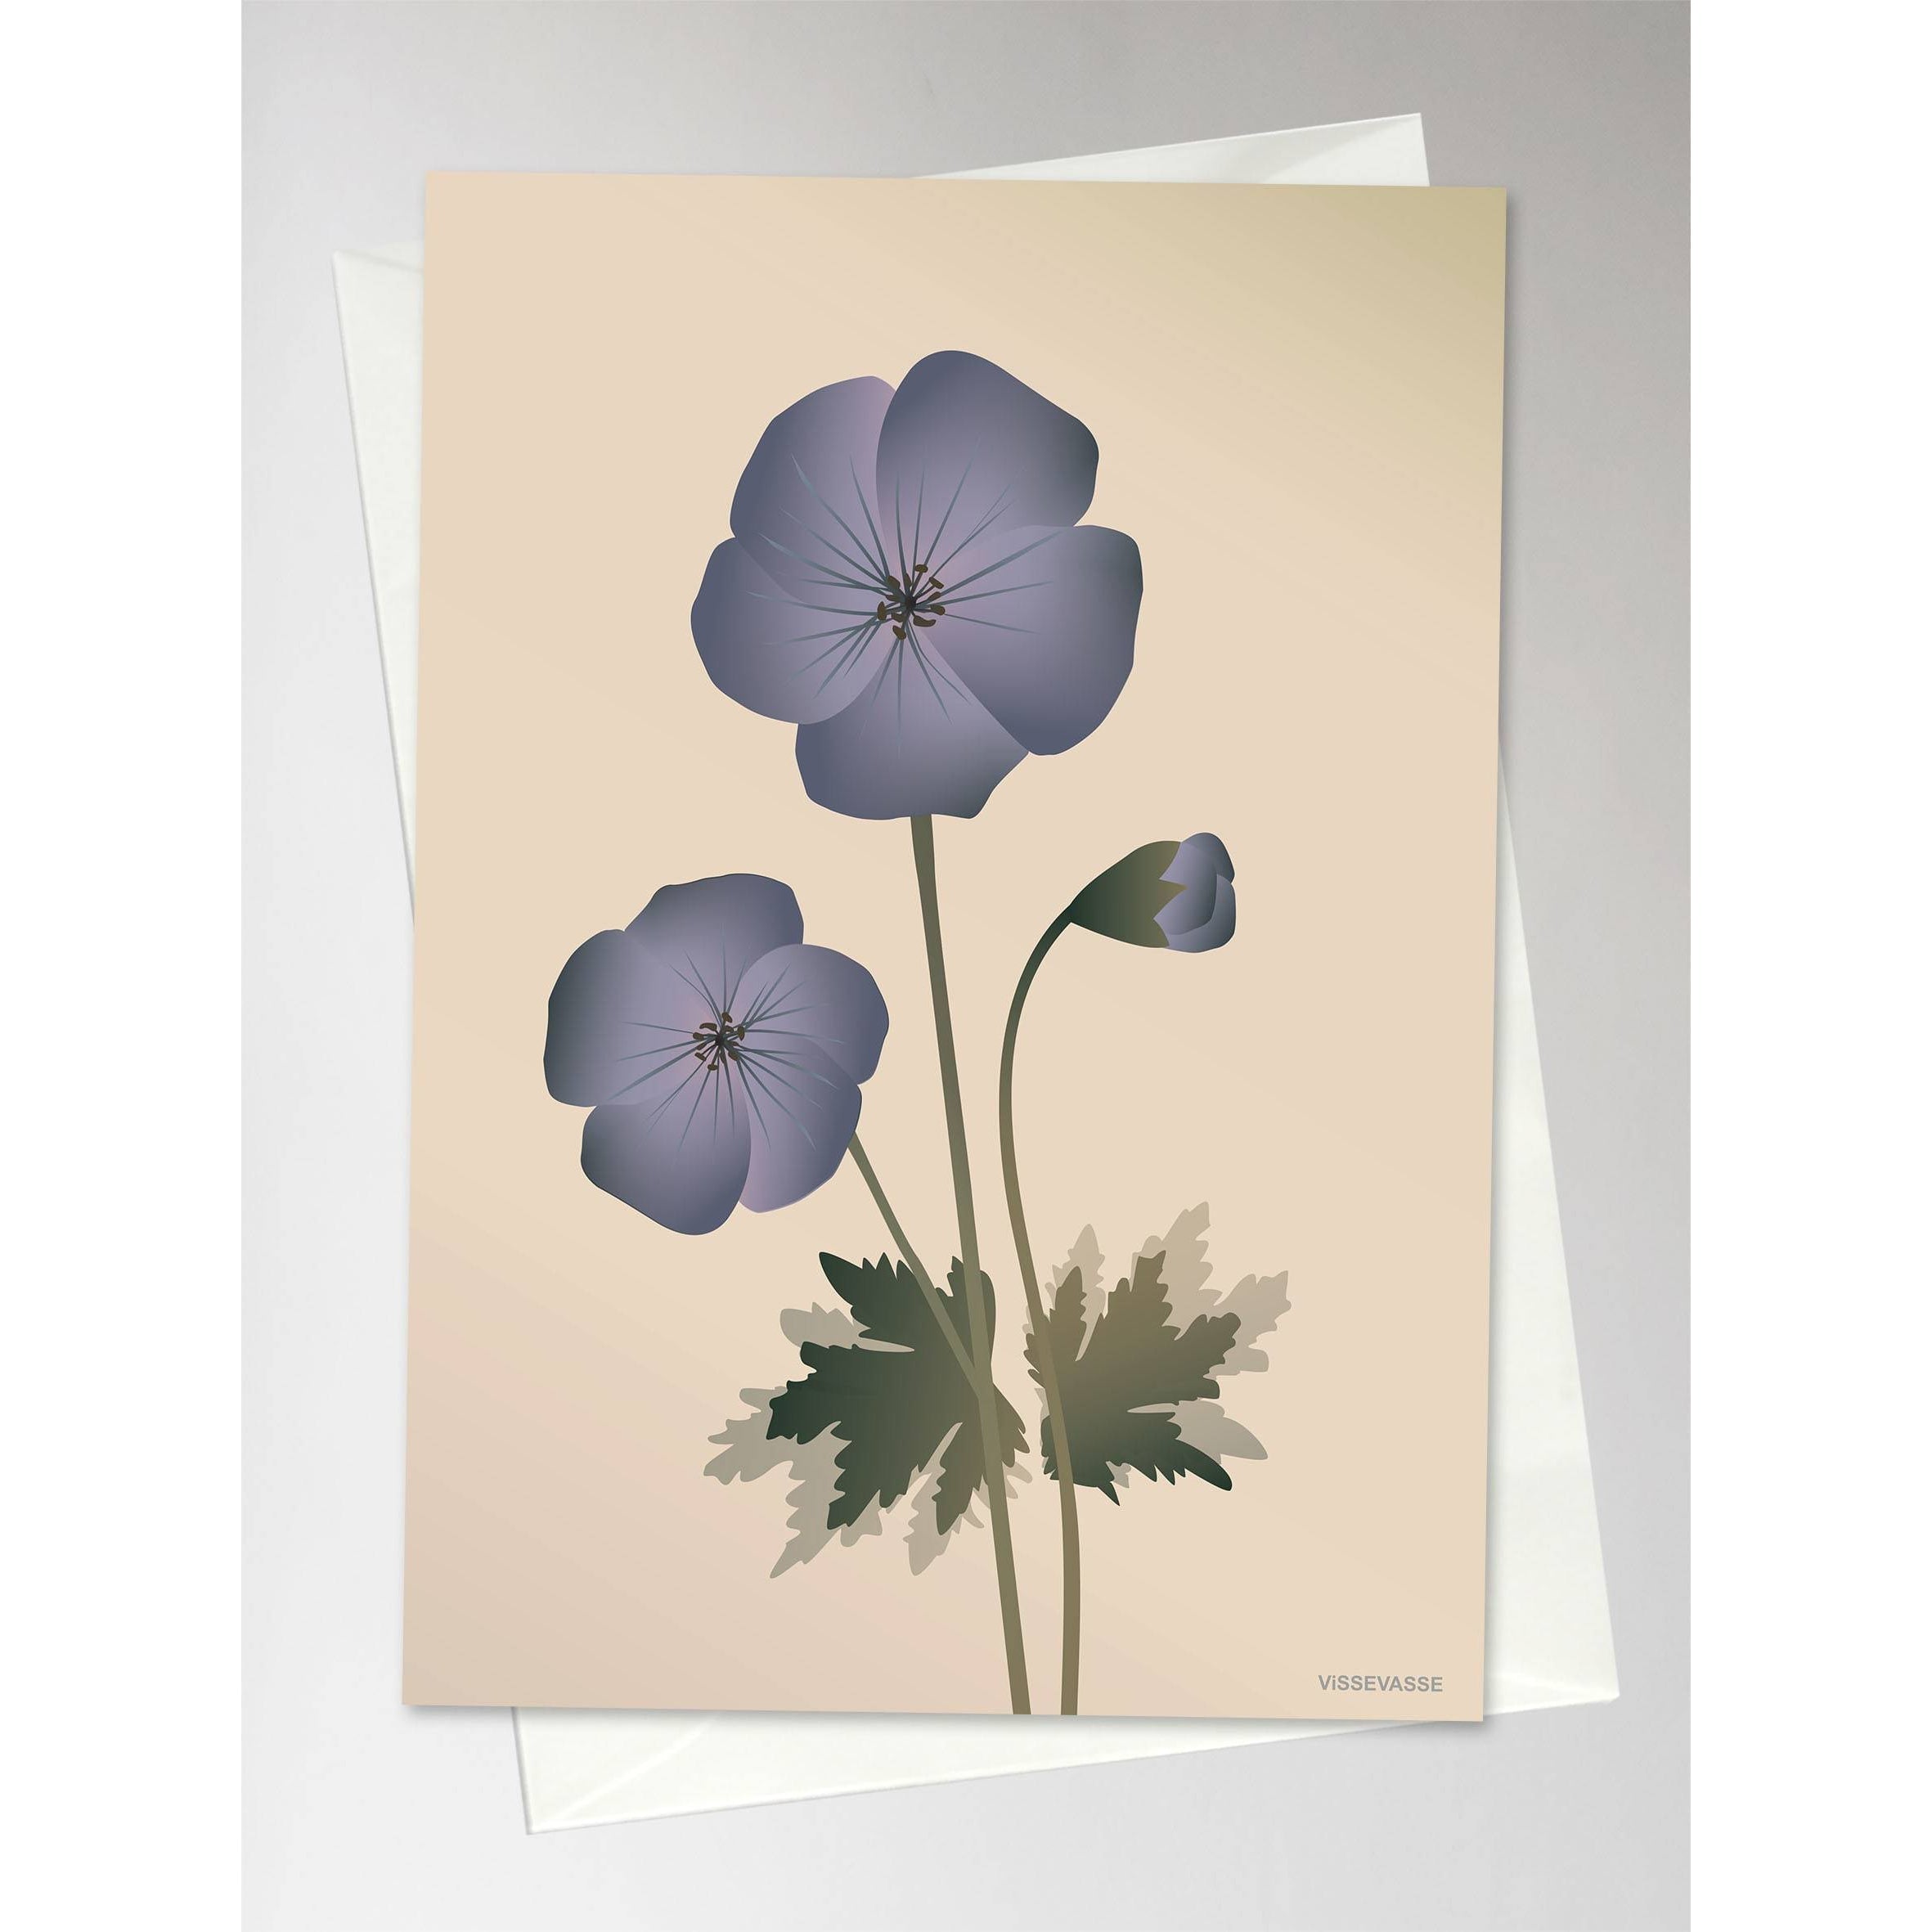 Vissevasse Geranium Greeting Card, 10,5x15cm